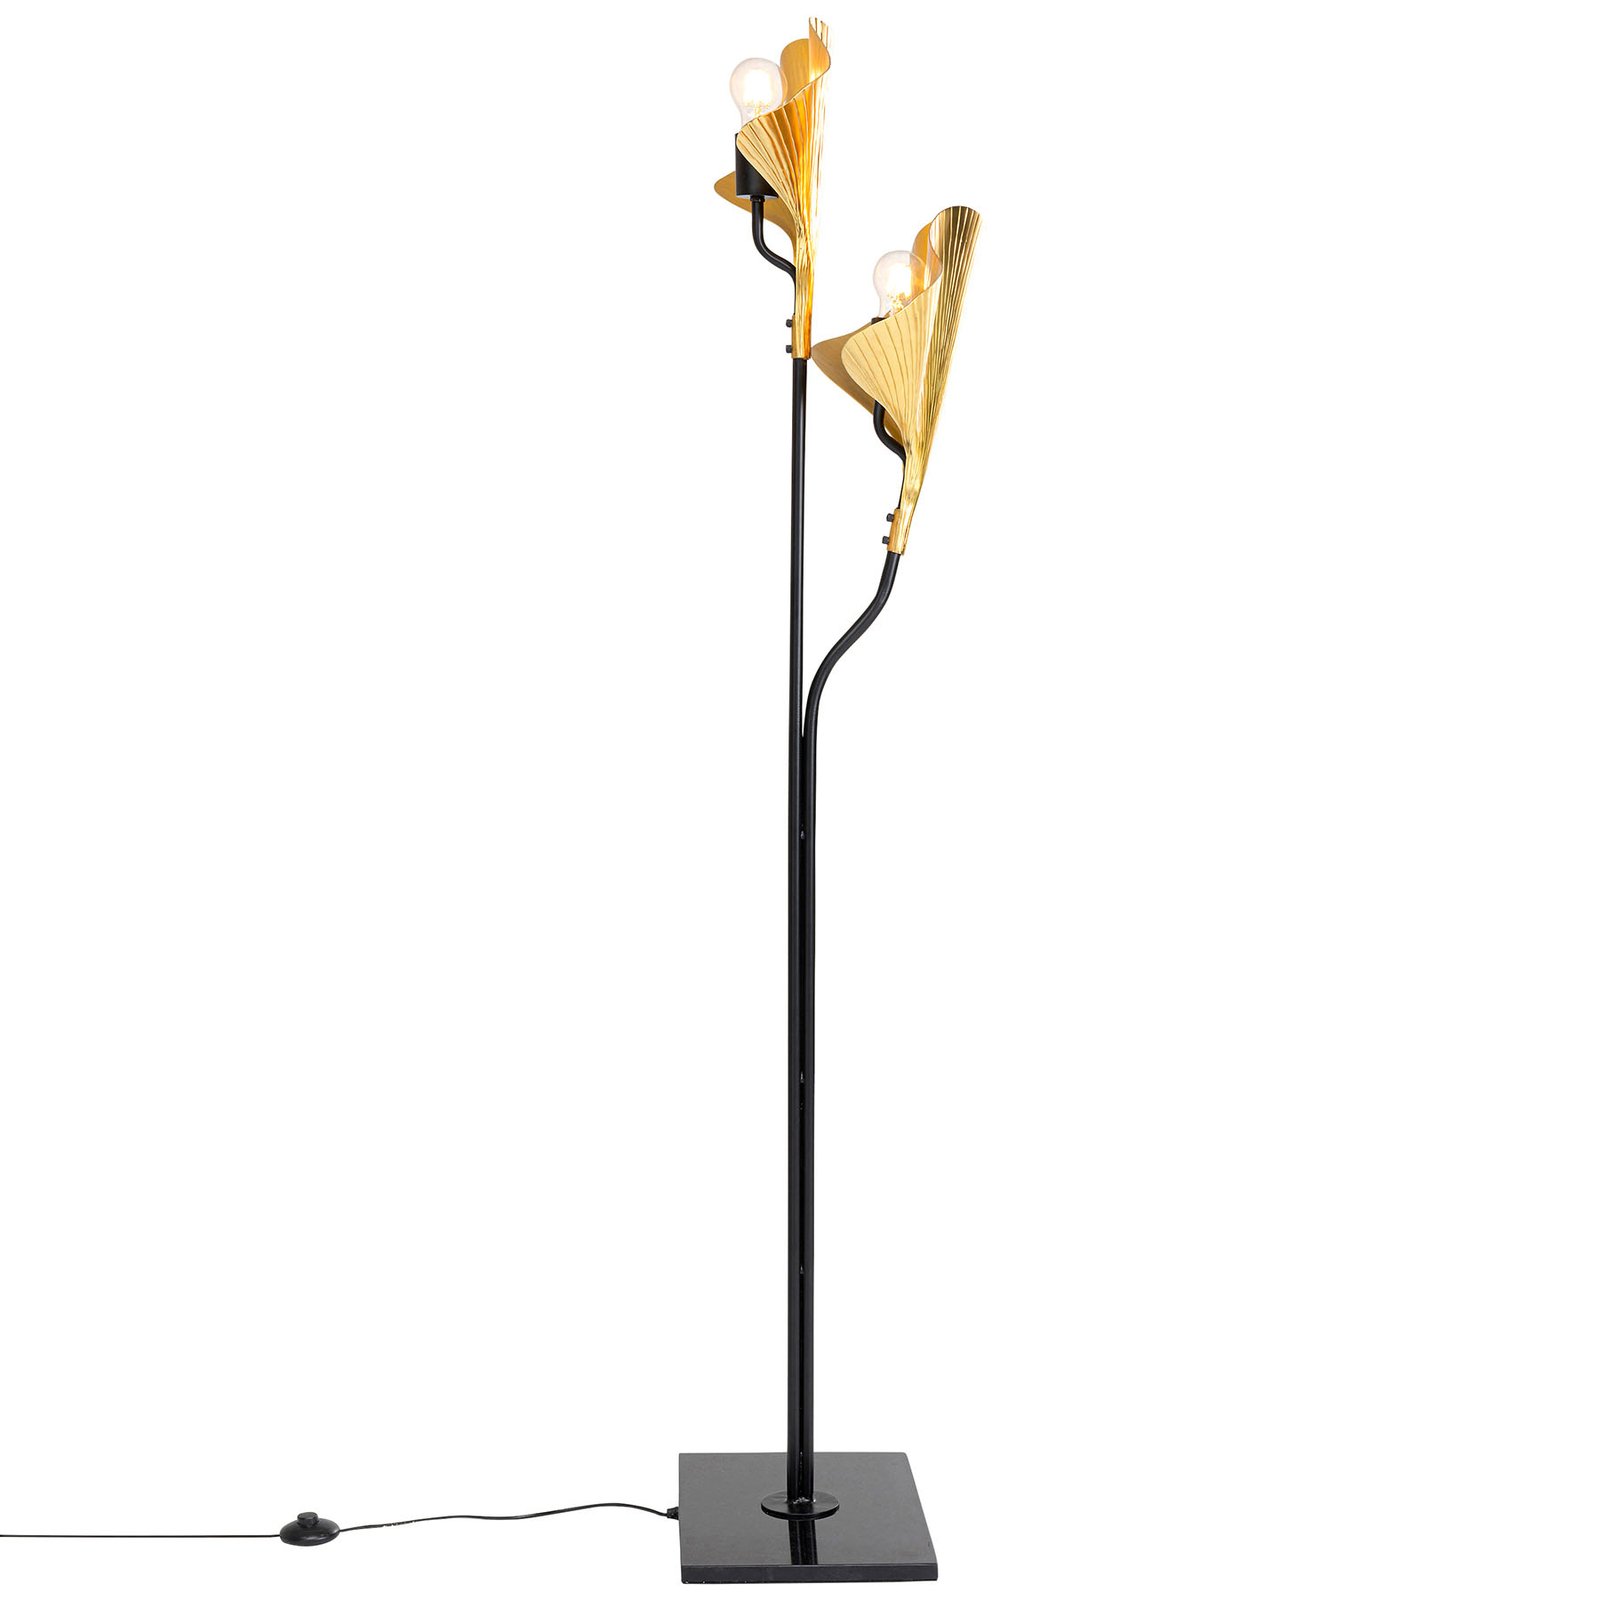 KARE Gingko Due lámpara de pie con hojas doradas